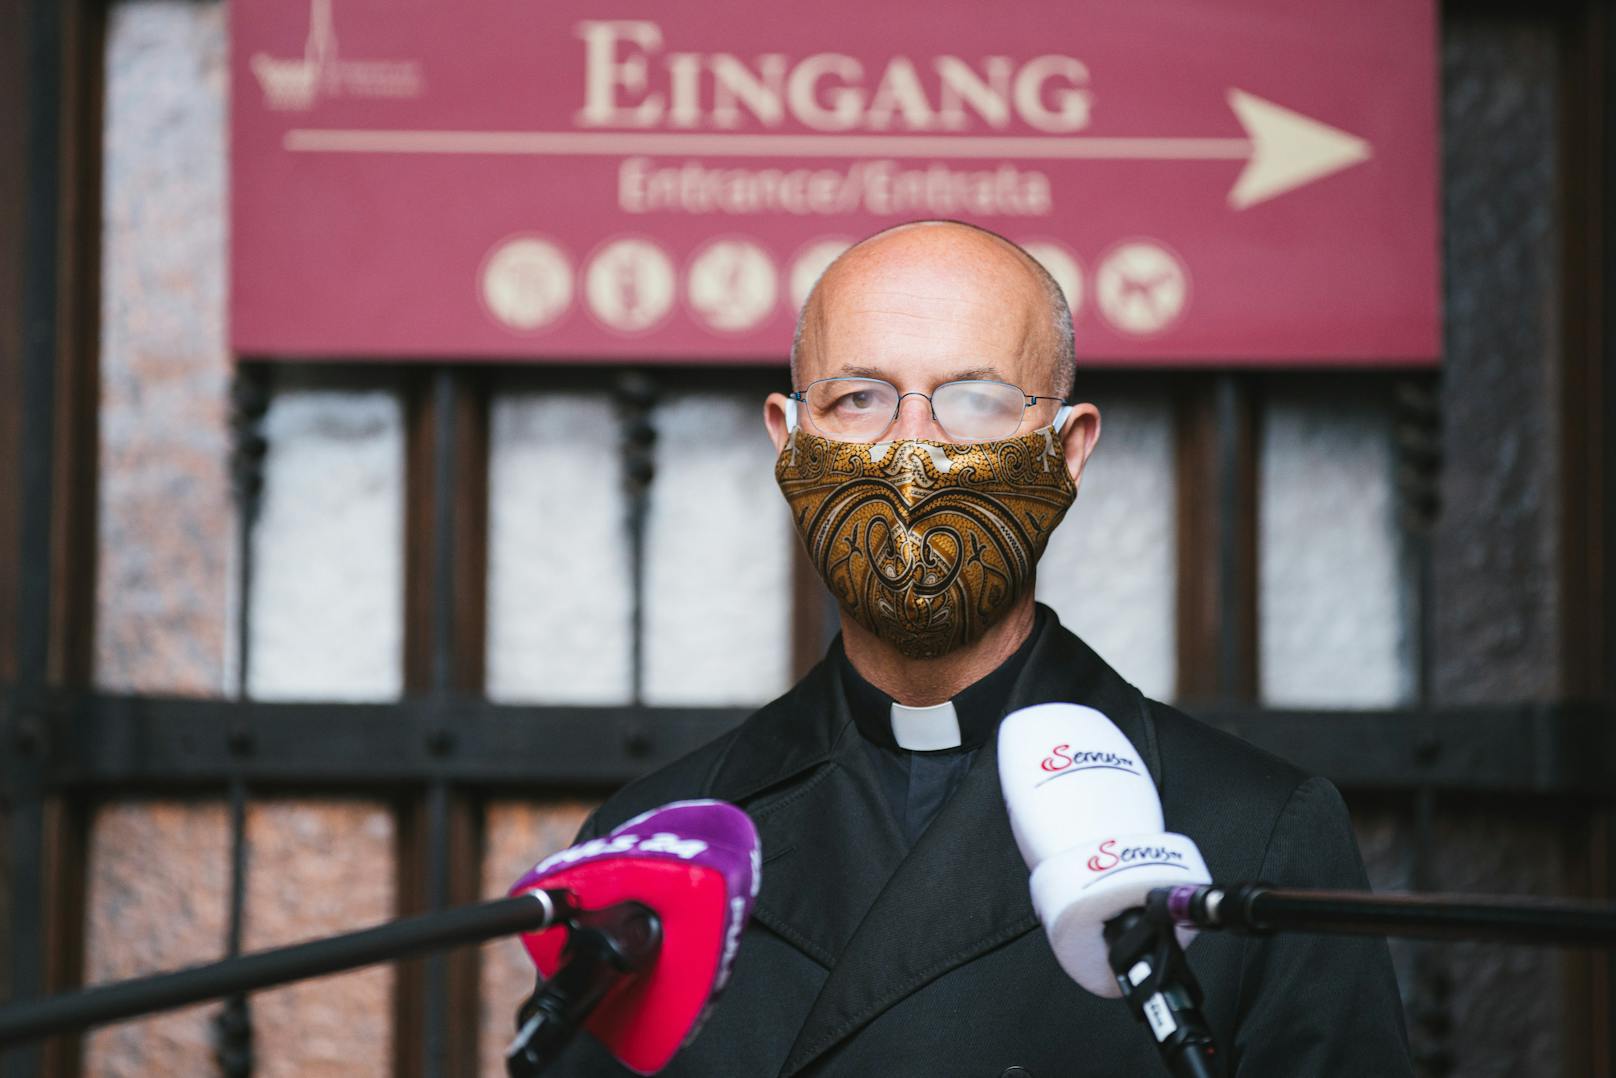 Dompfarrer Toni Faber mit Mund-Nasen-Schutz bei einem Presseinterview